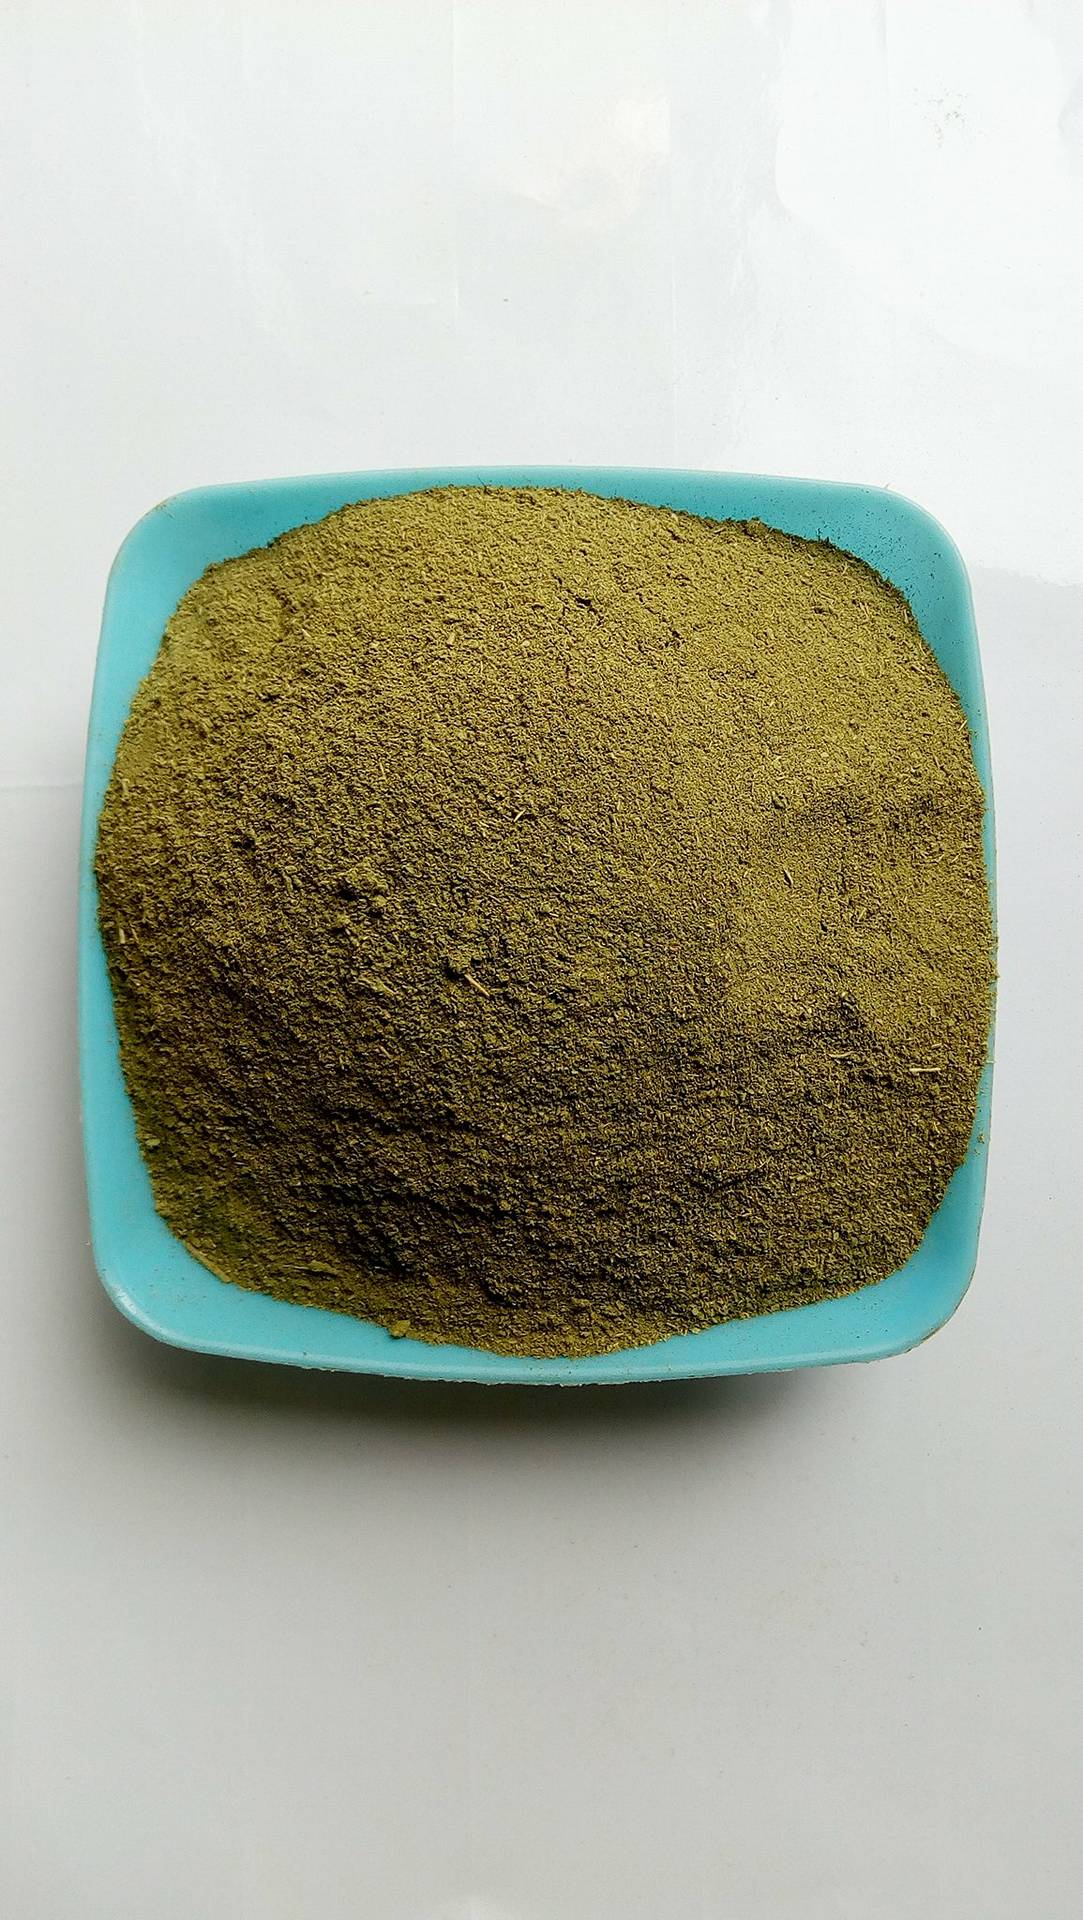 Baobab leaf Powder